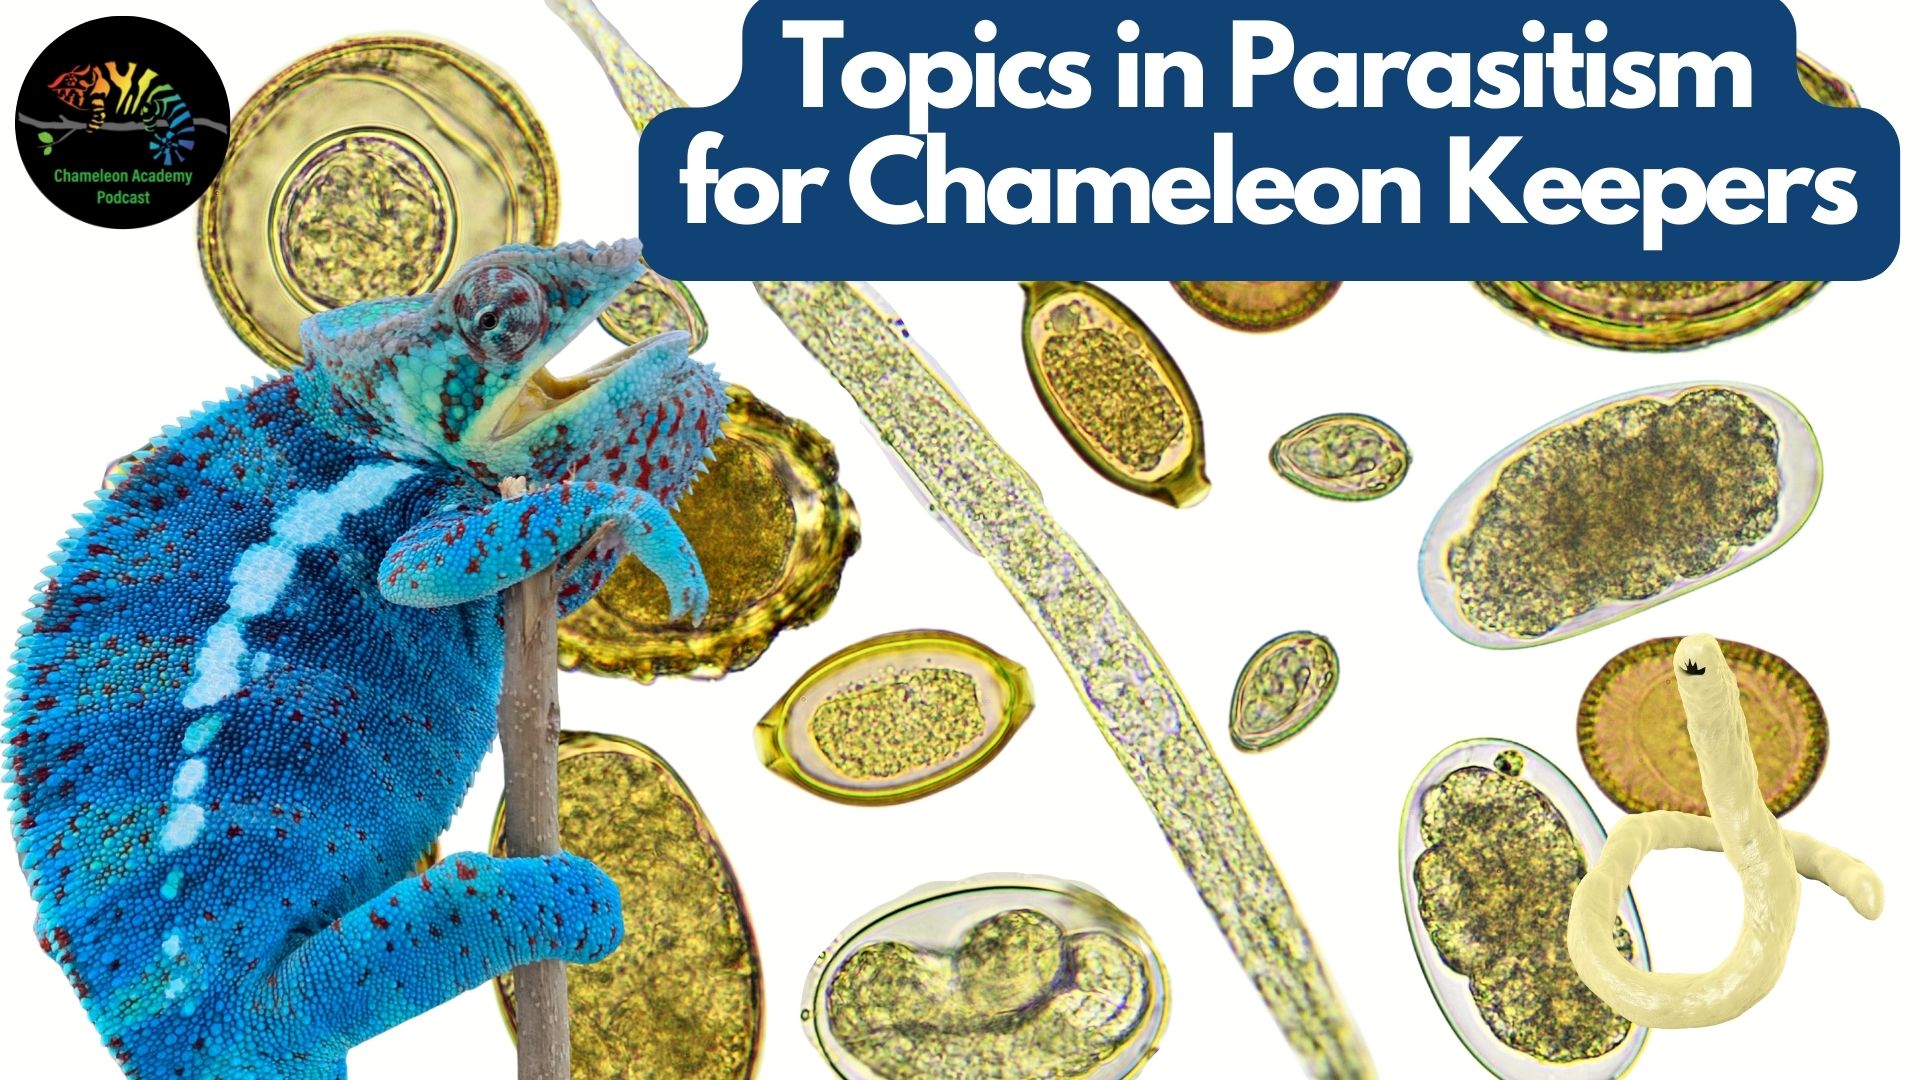 chameleon parasites